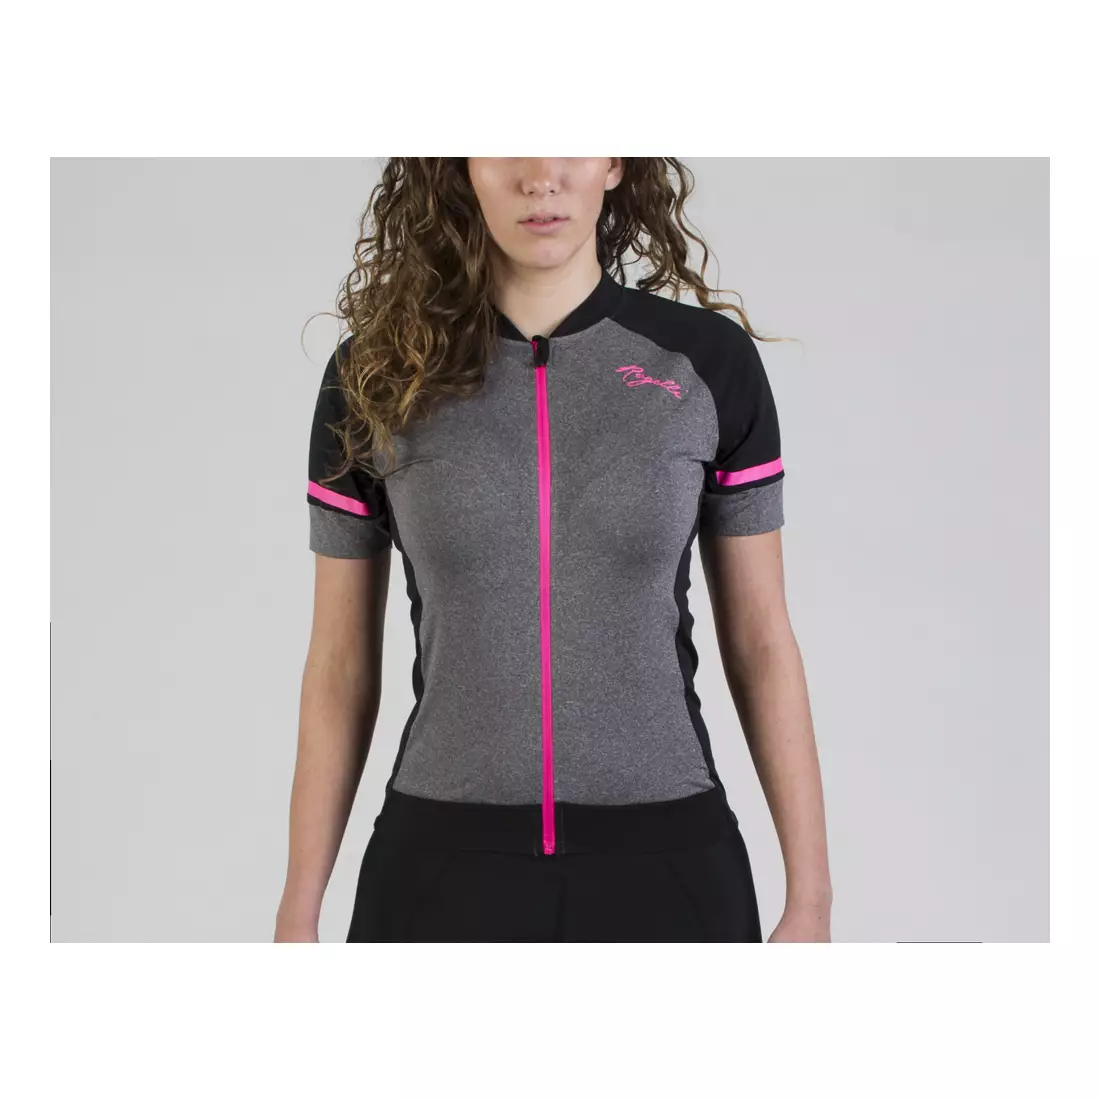 ROGELLI CARLYN 2.0 női kerékpáros mez, fekete-szürke-rózsaszín 010.107